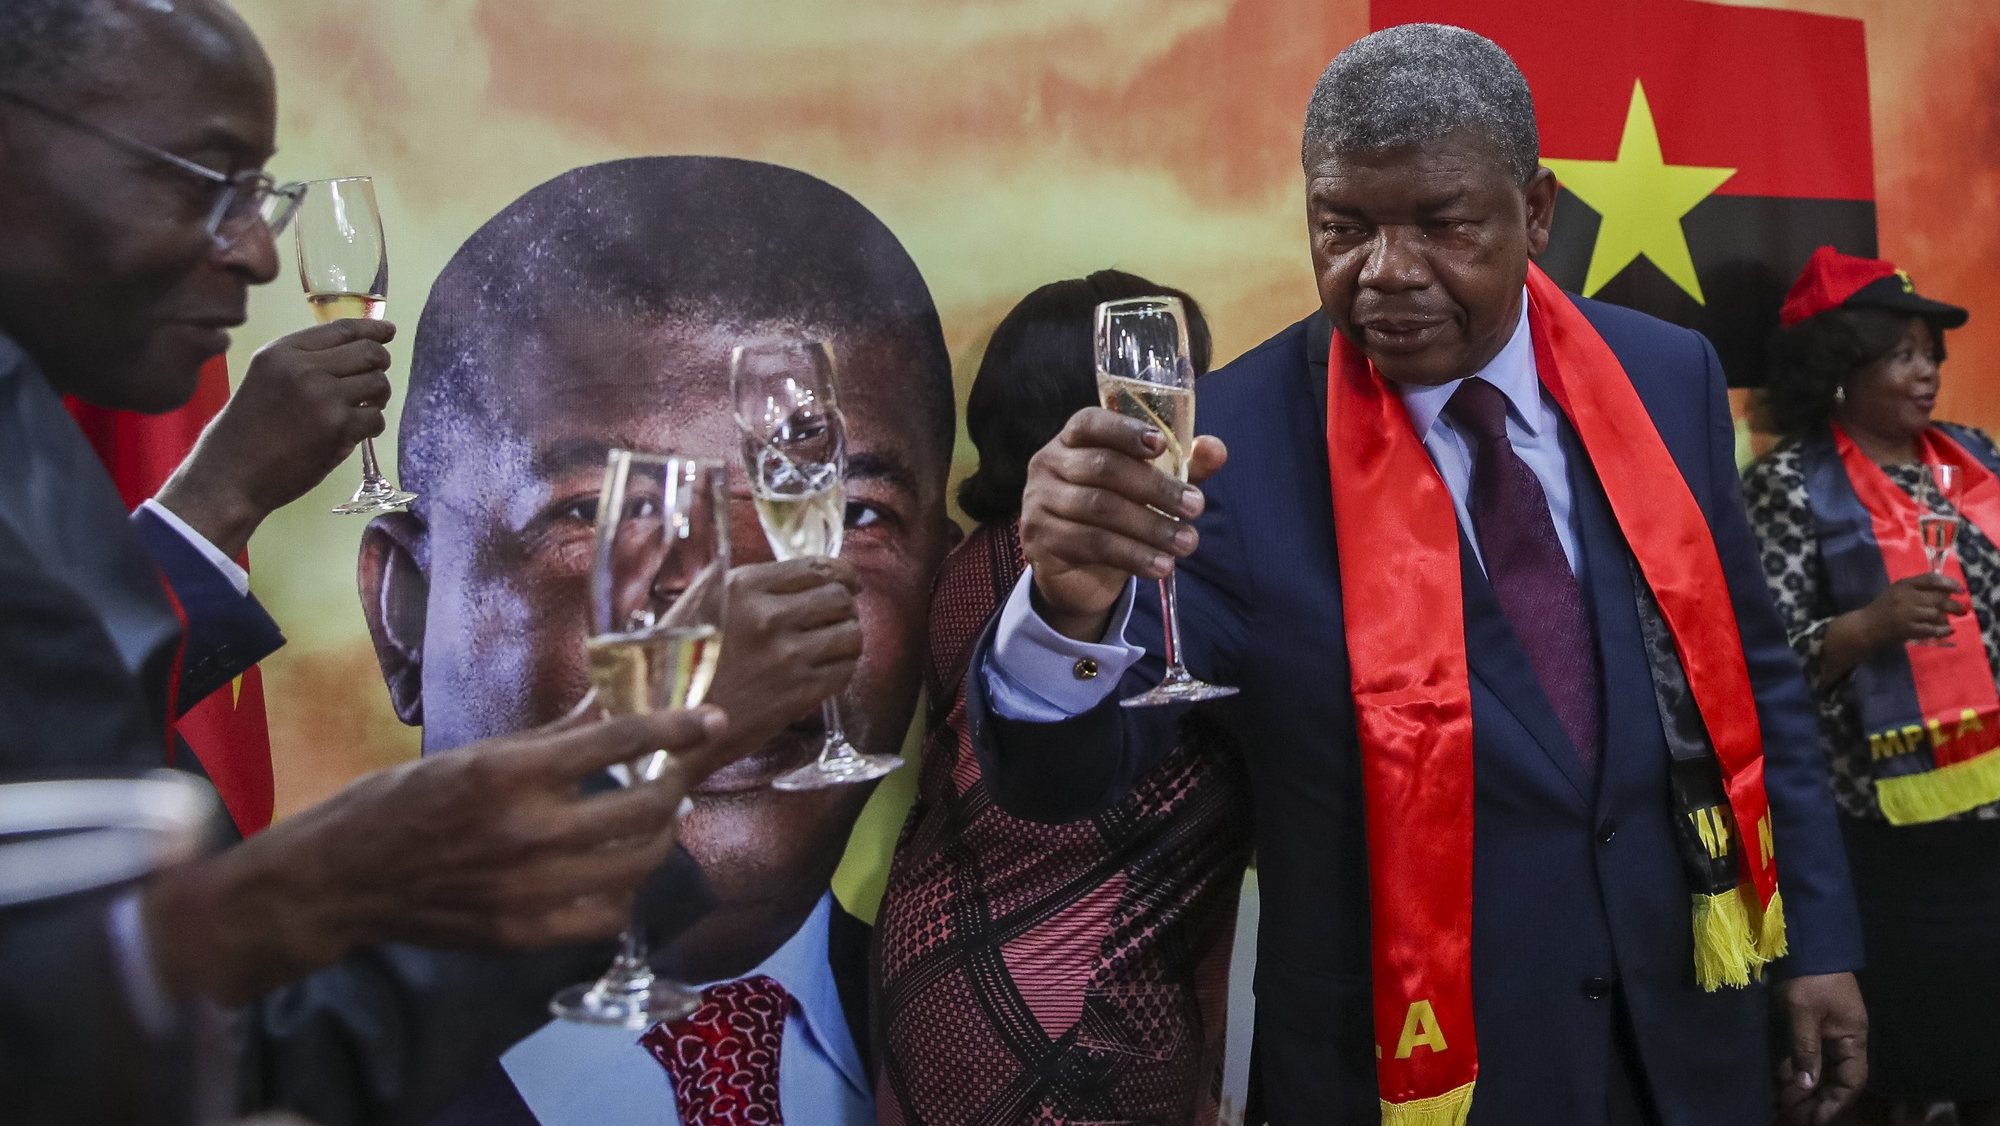 Eleições em Angola: Tribunal Superior rejeita recurso da oposição, João Lourenço reeleito presidente